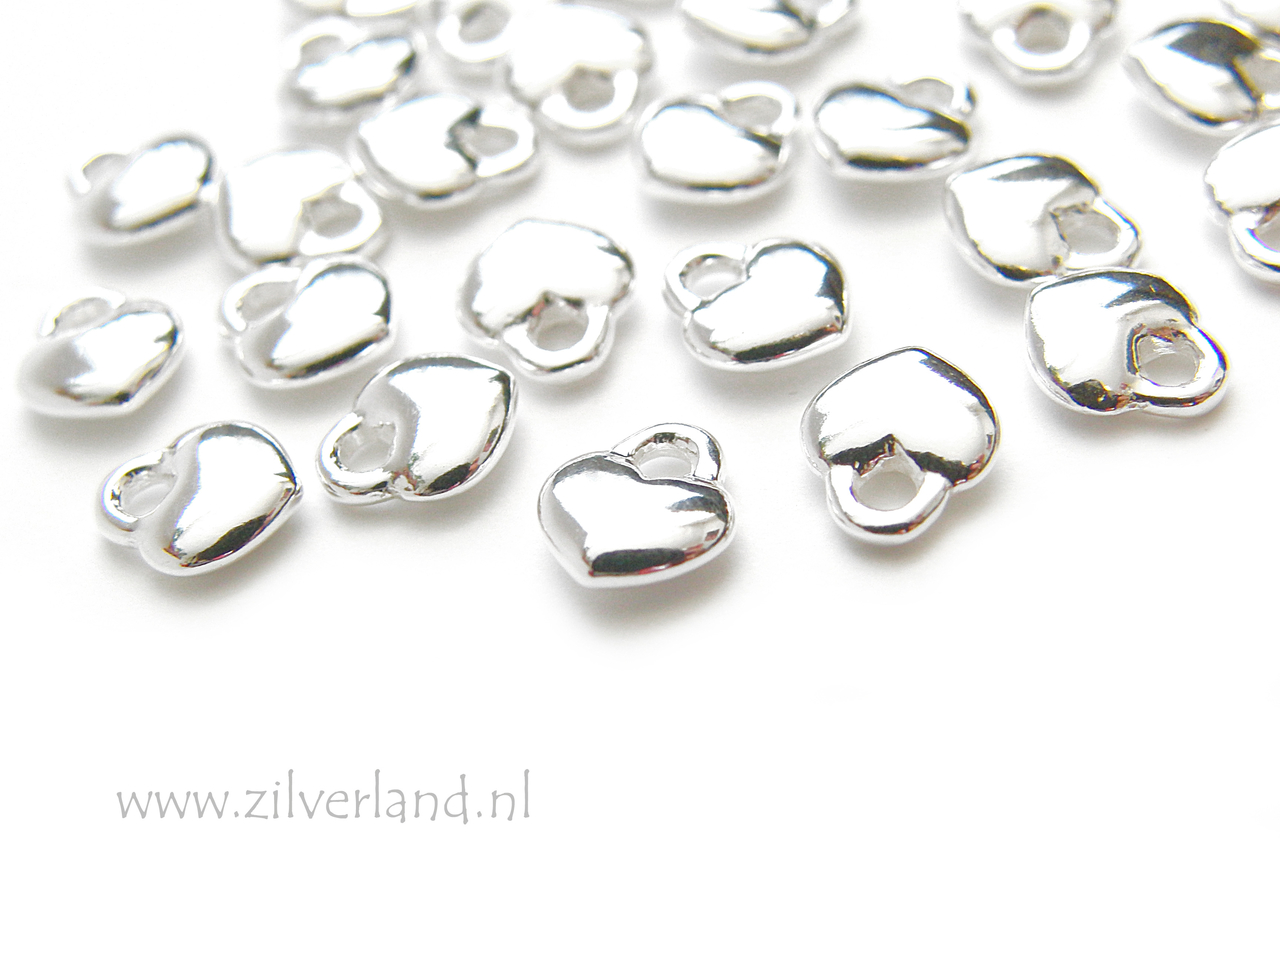 1 Stuk Sterling Zilveren Bedel- Hartje Zilverland- Zilveren Sieraden Onderdelen & Edelstenen Kralen